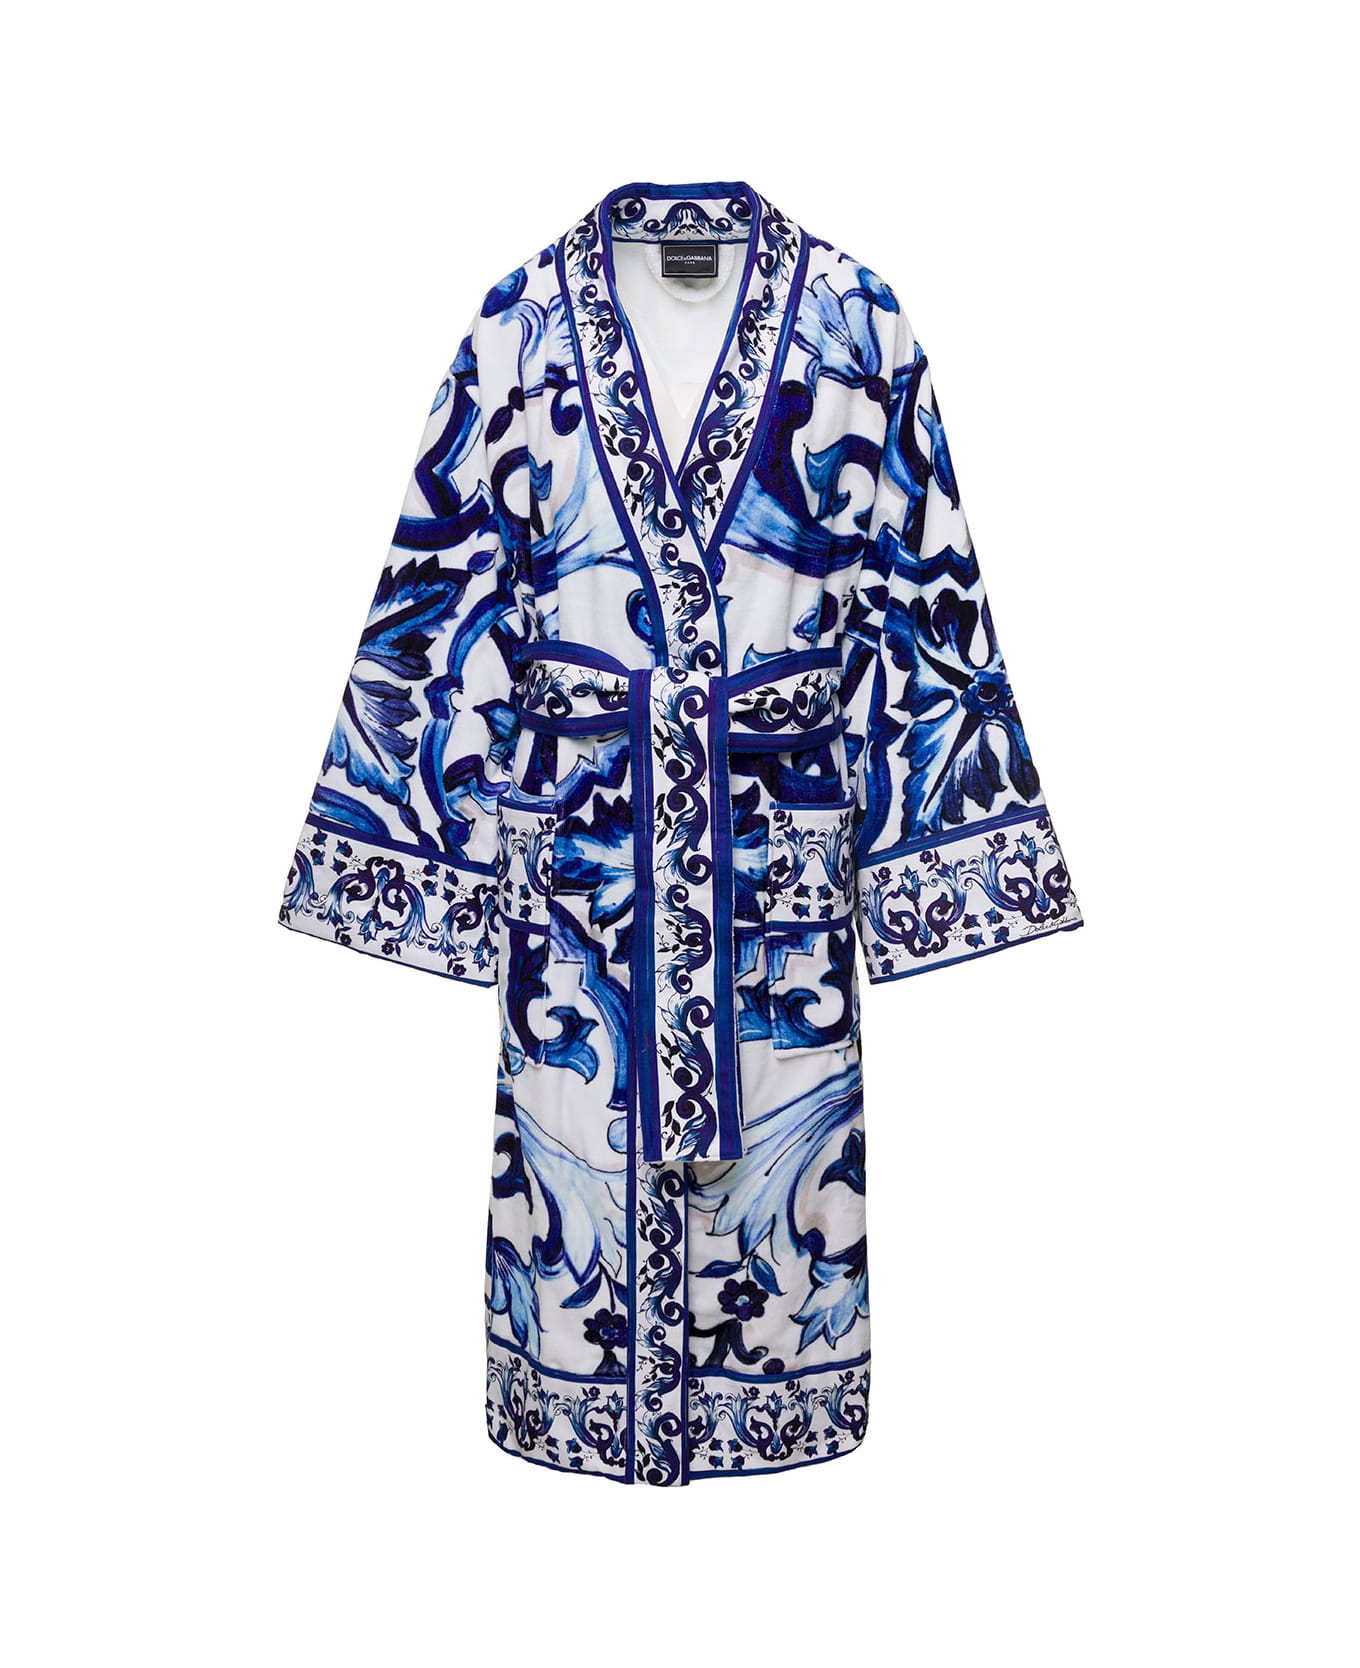 Dolce & Gabbana Multicolor Kimono Bathrobe With All-over Blu Mediterraneo Print In Cotton Dolce & Gabbana - Blu